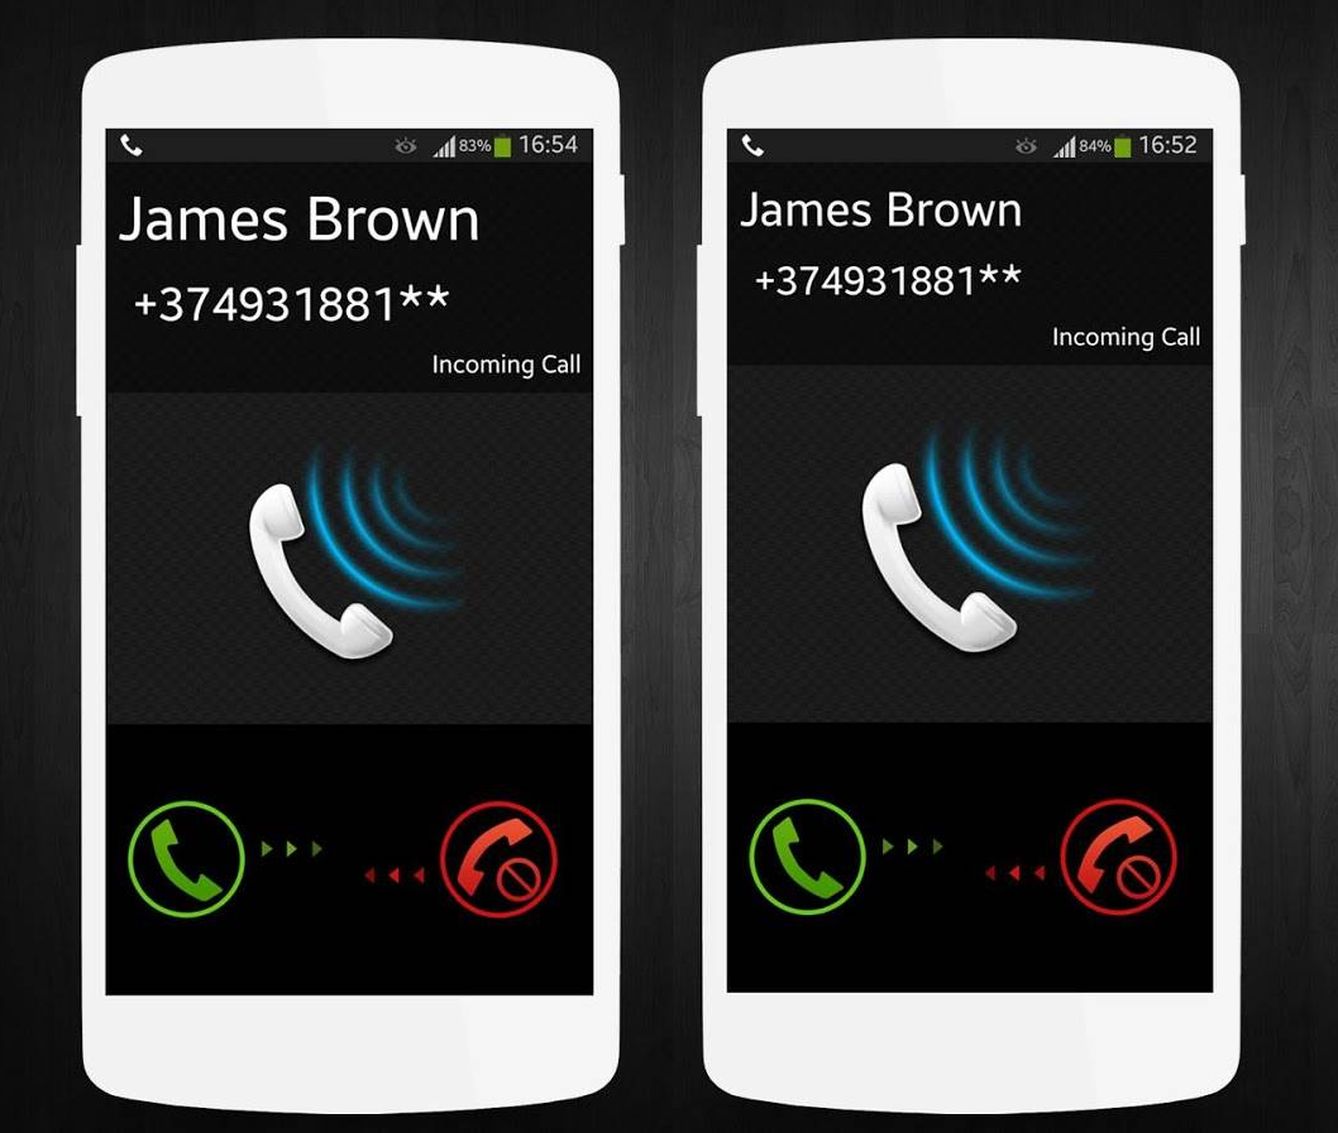 Un botón verde para colgar y otro rojo para descolgar harán las llamadas mucho más sencillas. (Google Play)